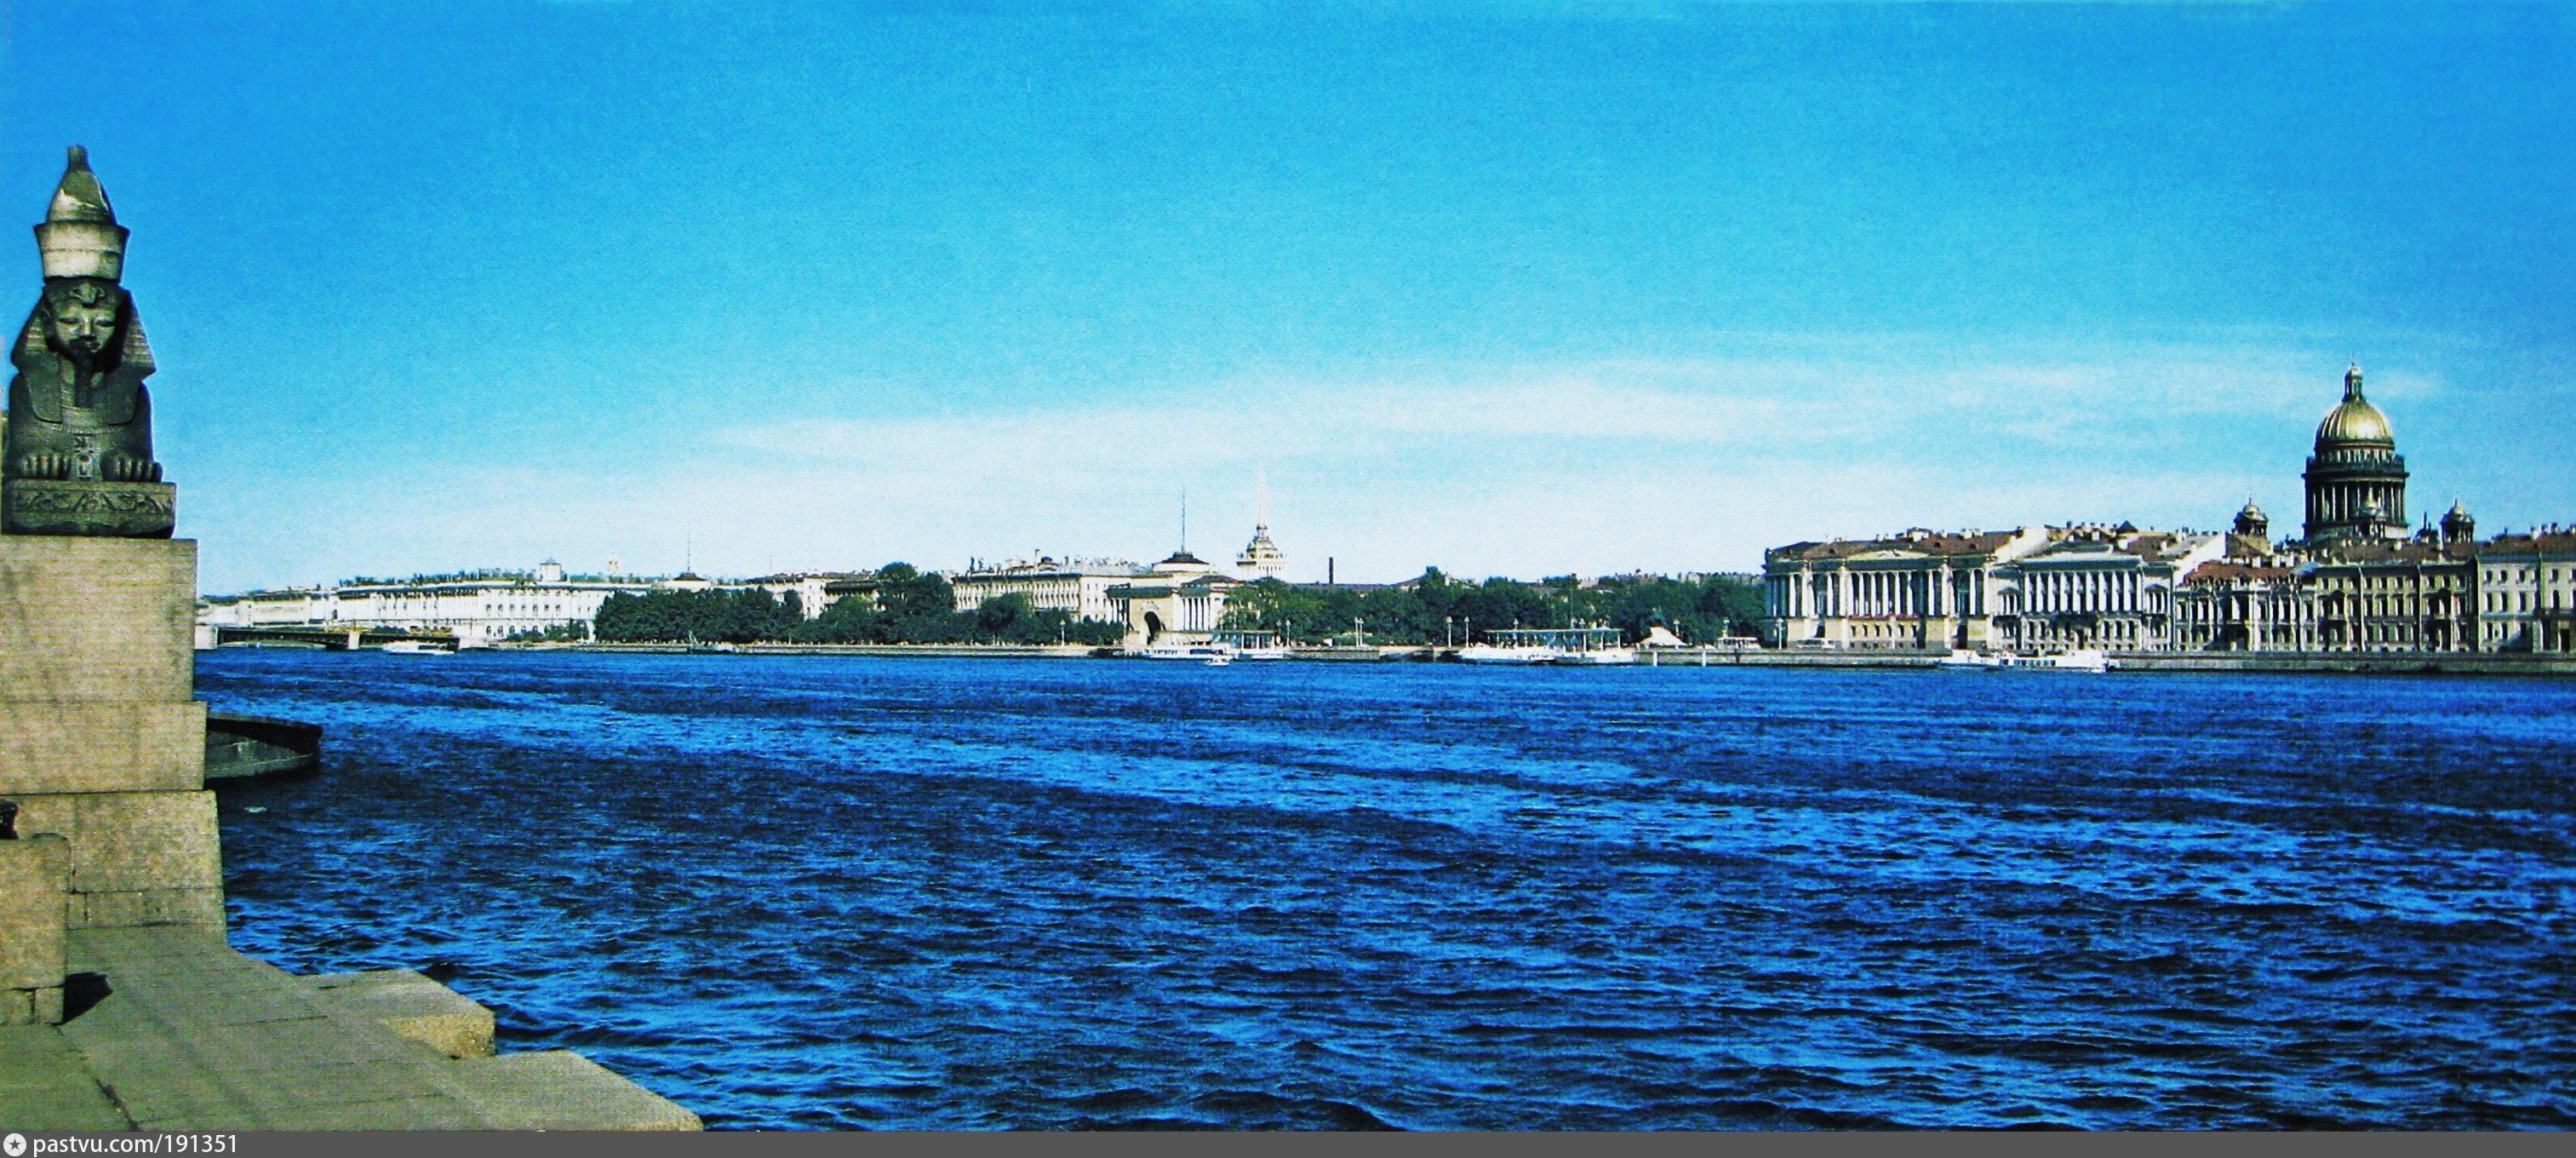 Петербург расположен на реке неве. Набережная реки Невы.